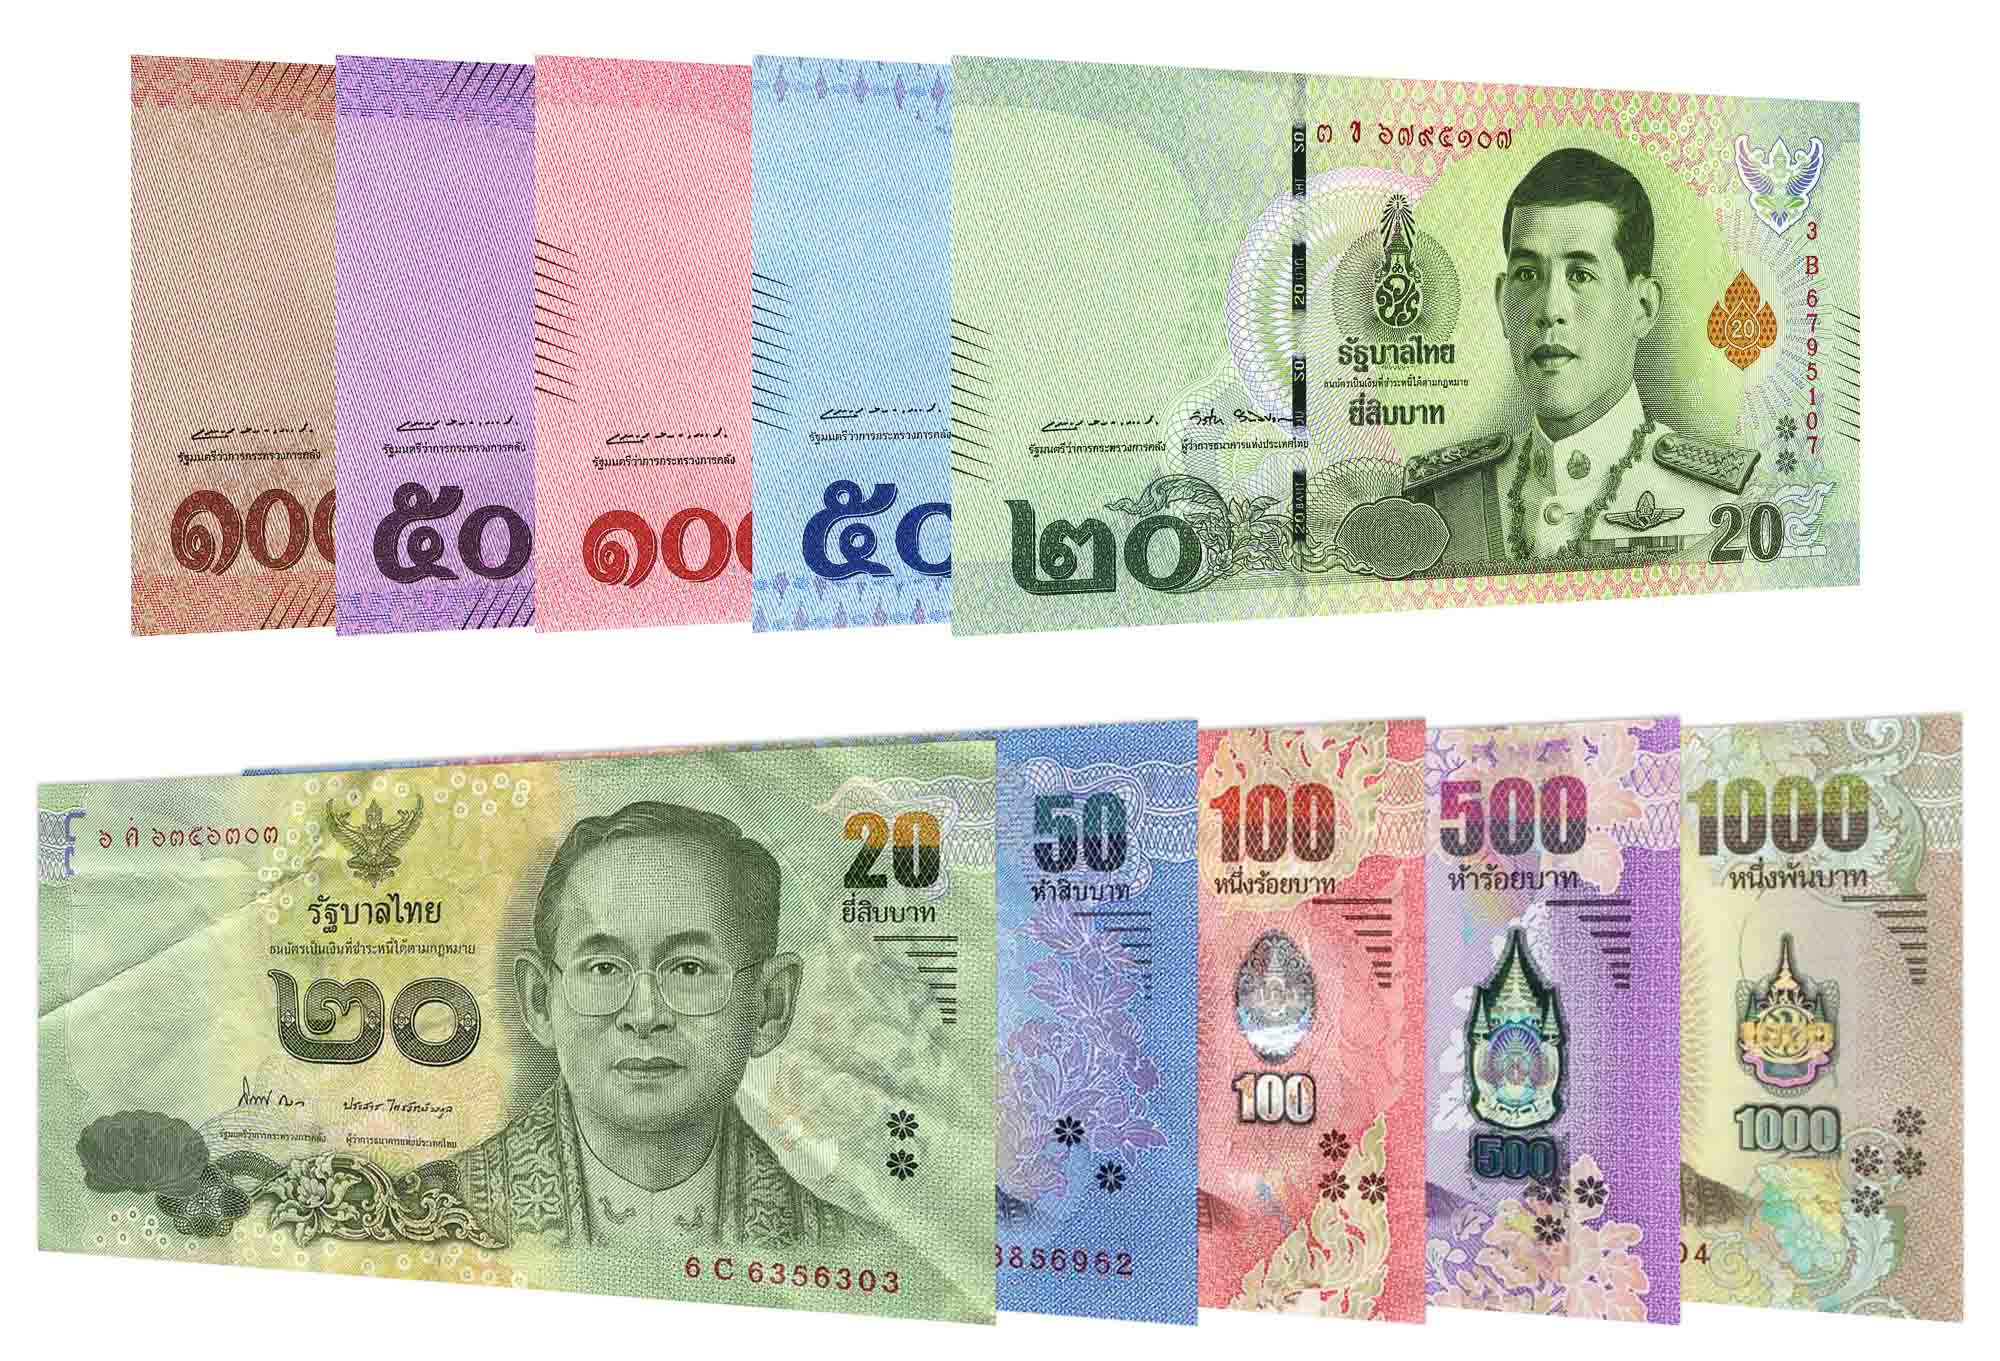 Thai Baht to CAD: Khám Phá Bí Mật Đằng Sau Tỷ Giá Hối Đoái và Làm Thế Nào Để Tối Ưu Hóa Lợi Nhuận Của Bạn